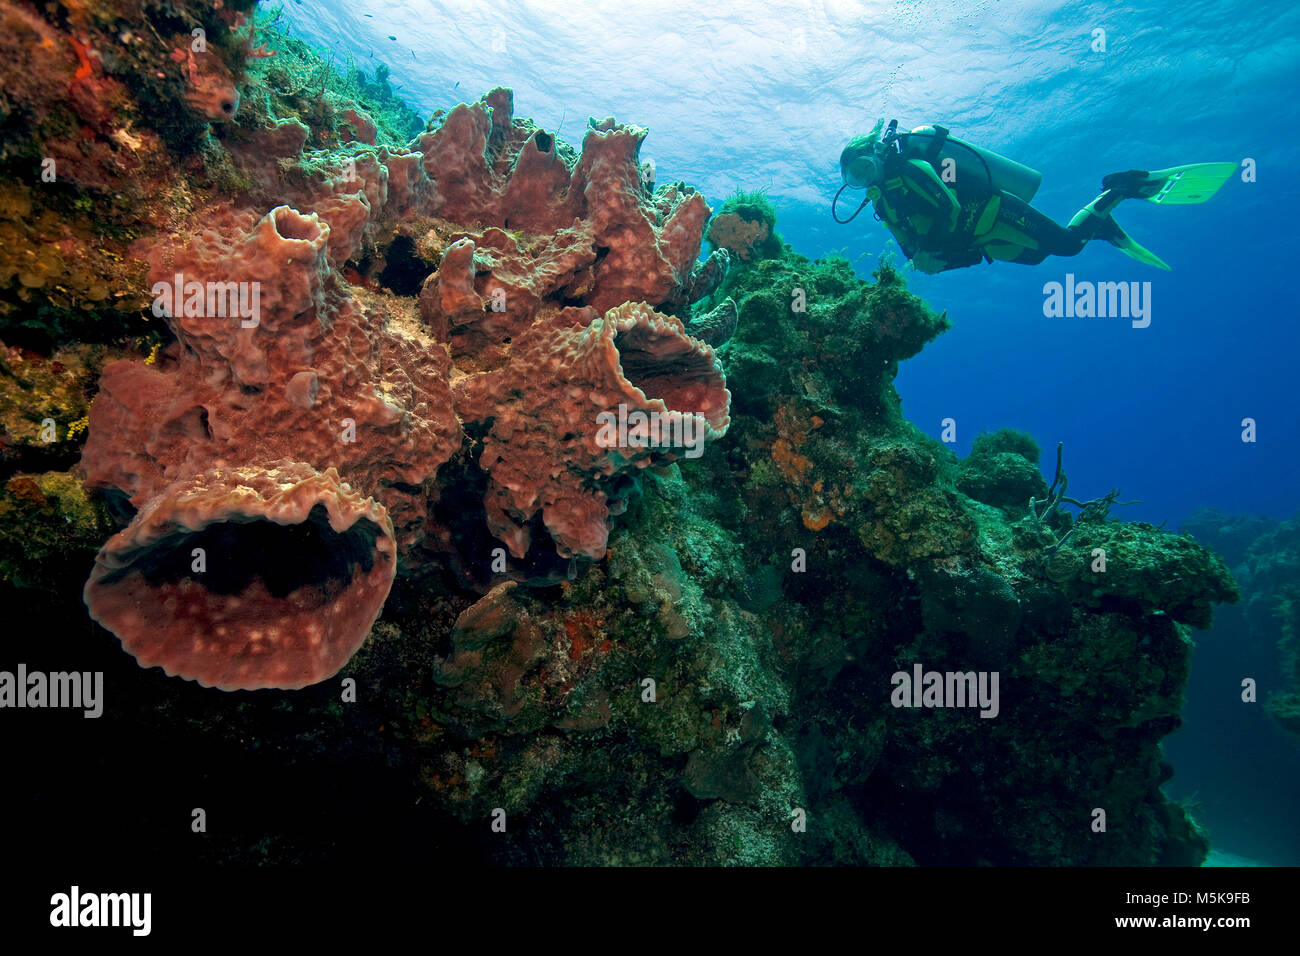 Taucher an einem karibischen Korallenriffs mit riesigen Faß Schwamm (Xestospongia muta), Insel Cozumel, Mexiko, Karibik Stockfoto